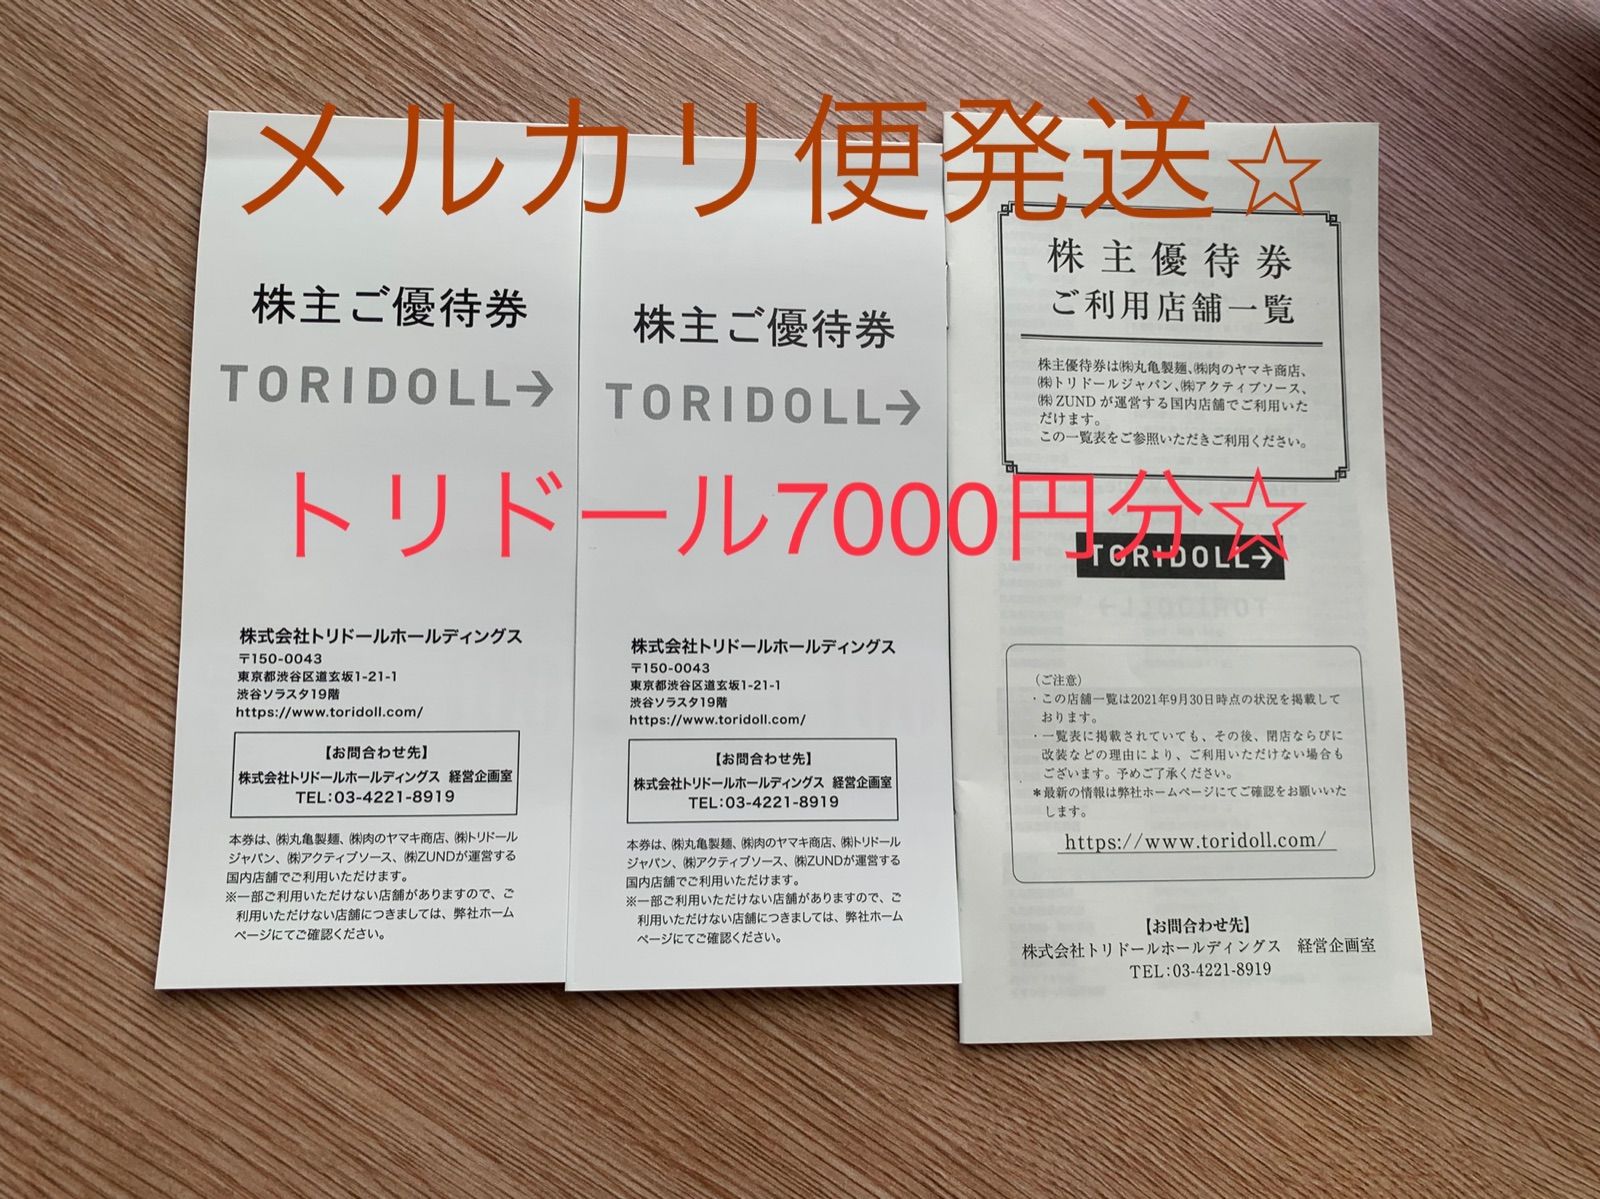 メルカリ便発送】トリドール7000円分株主優待券 - メルカリ